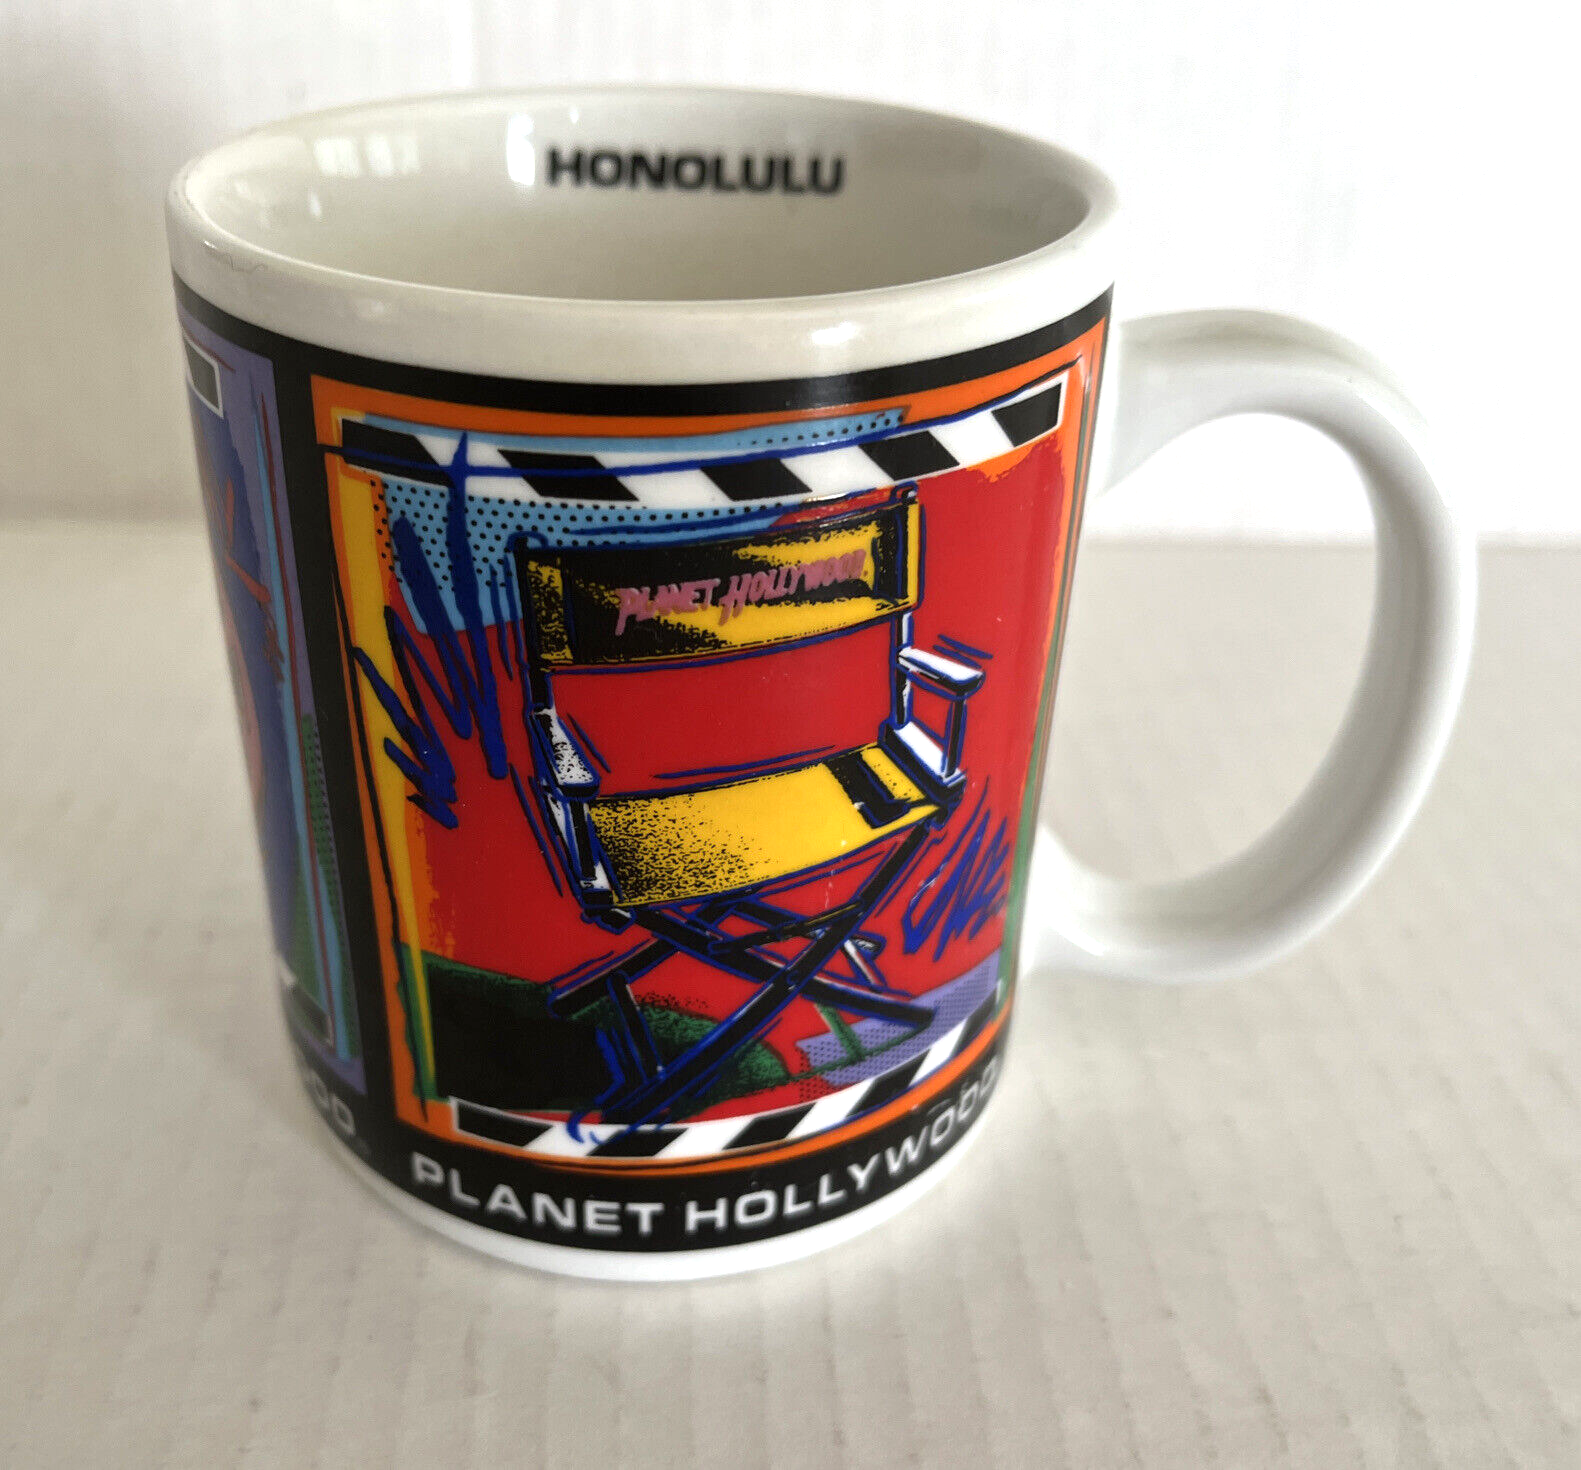 Primary image for Planet Hollywood Honolulu Director's Stuhl Kamera Kaffee- Teetasse